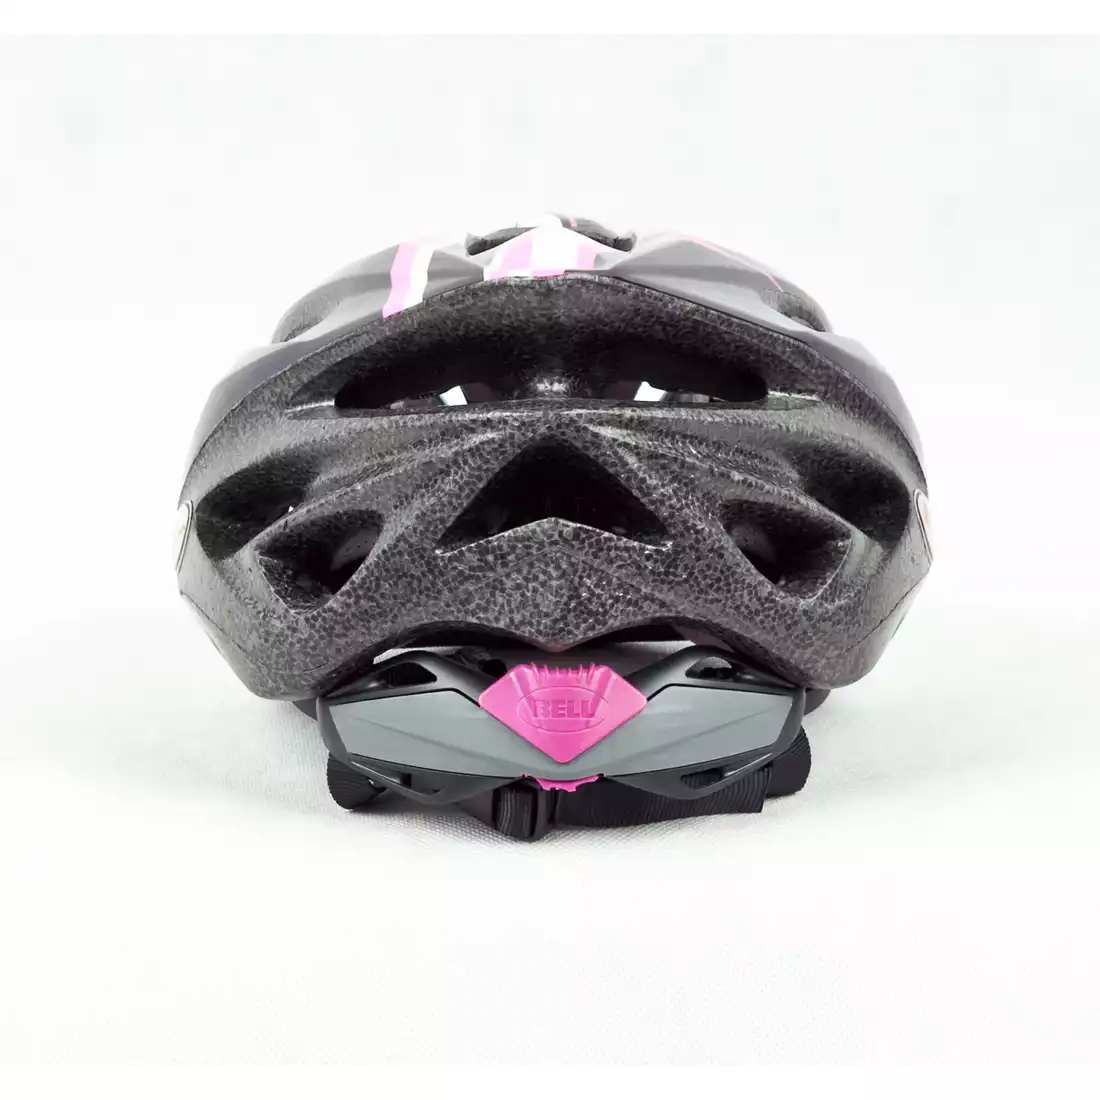 BELL SOLAR - damski kask rowerowy, fioletowo-różowy